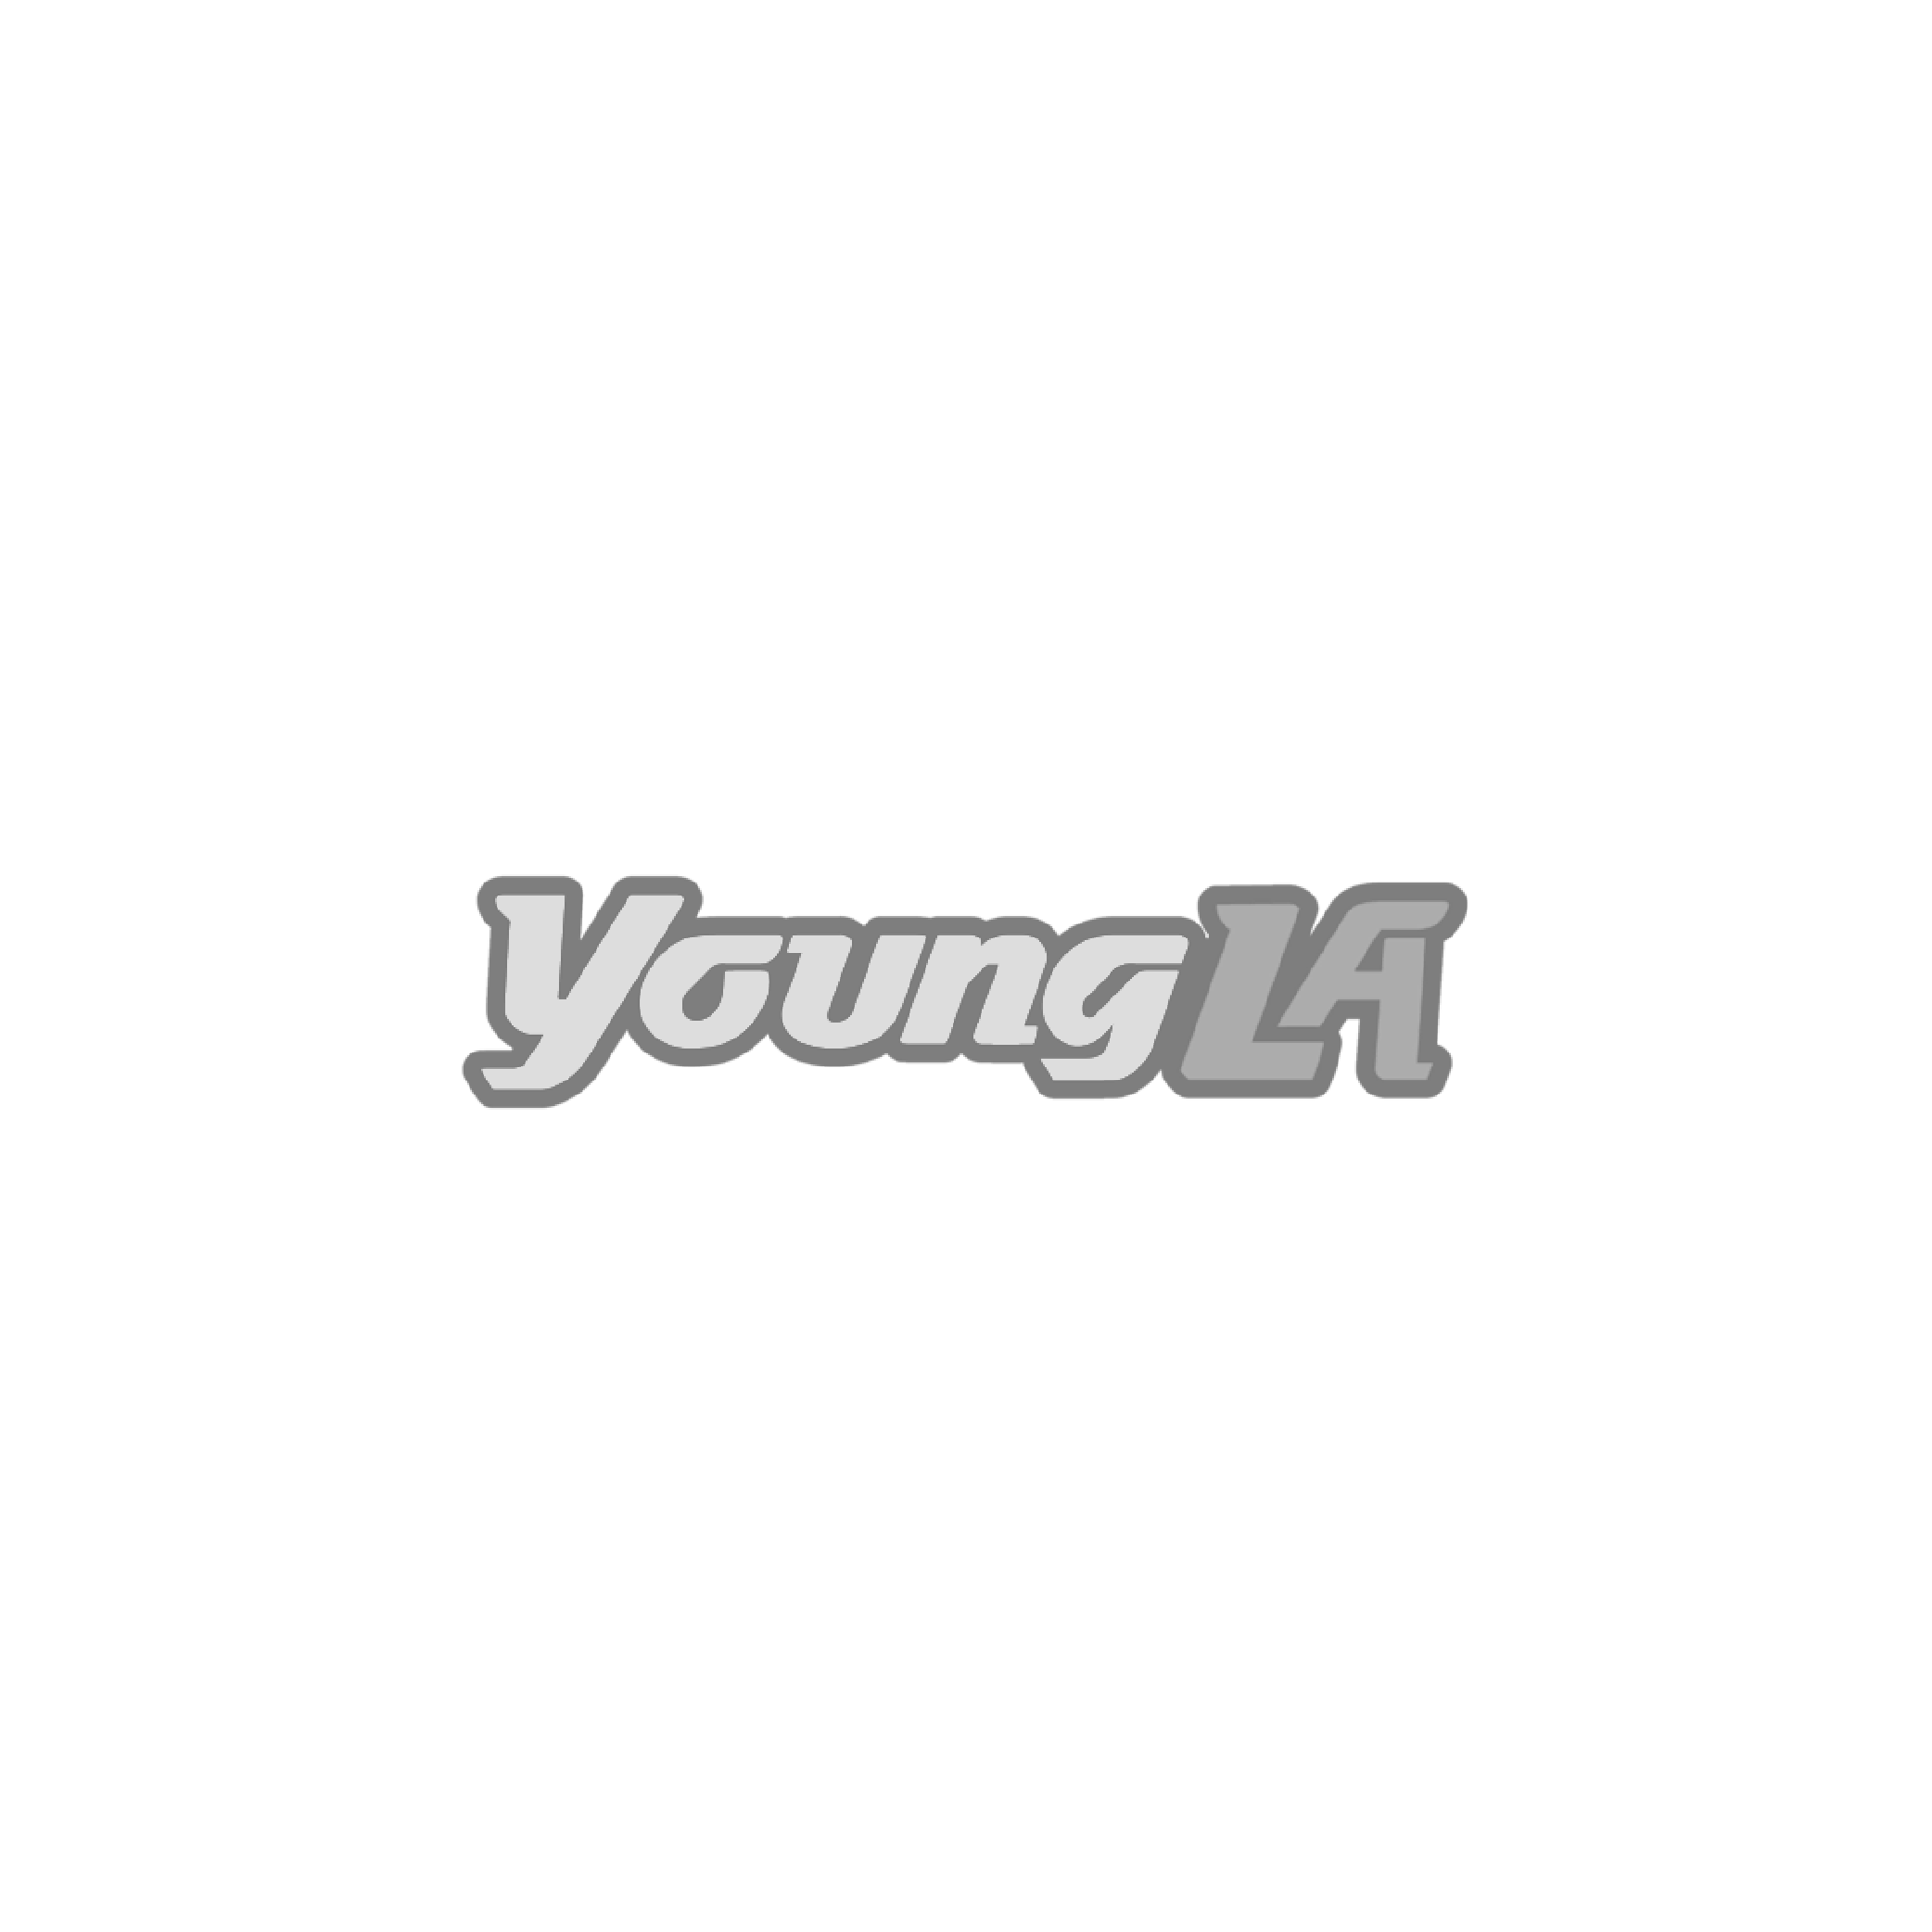 Young LA